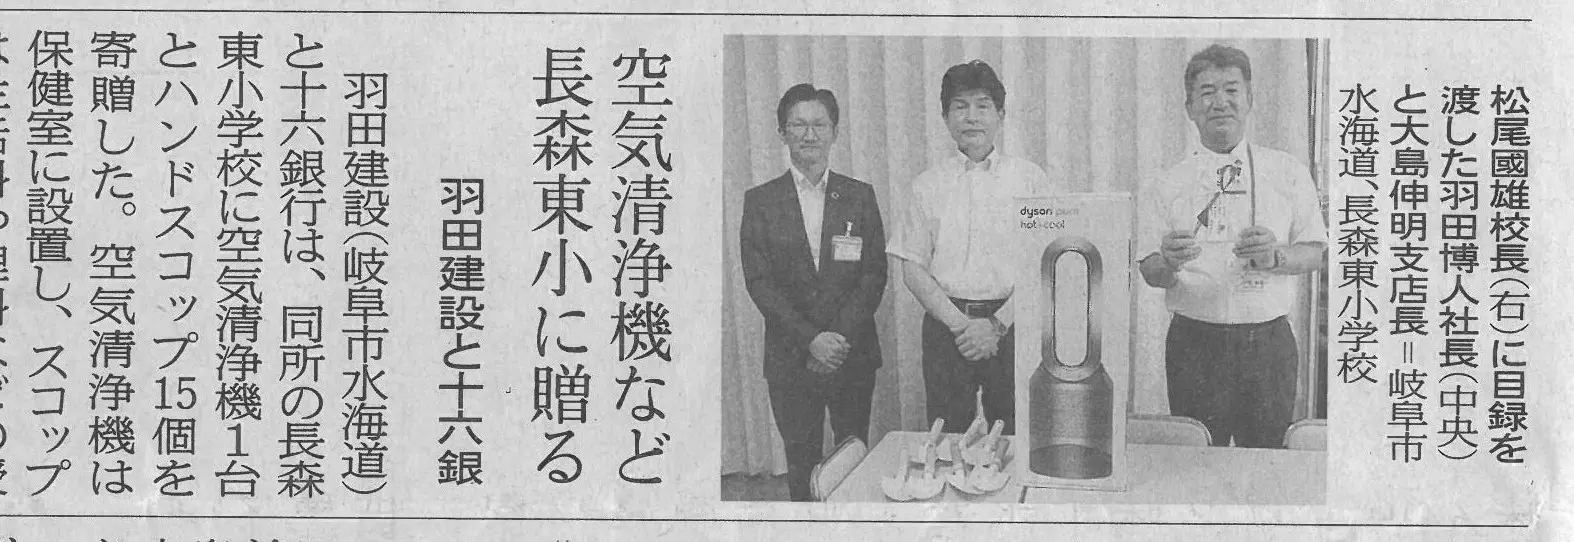 長森東小学校での贈呈式が、岐阜新聞に掲載をされました